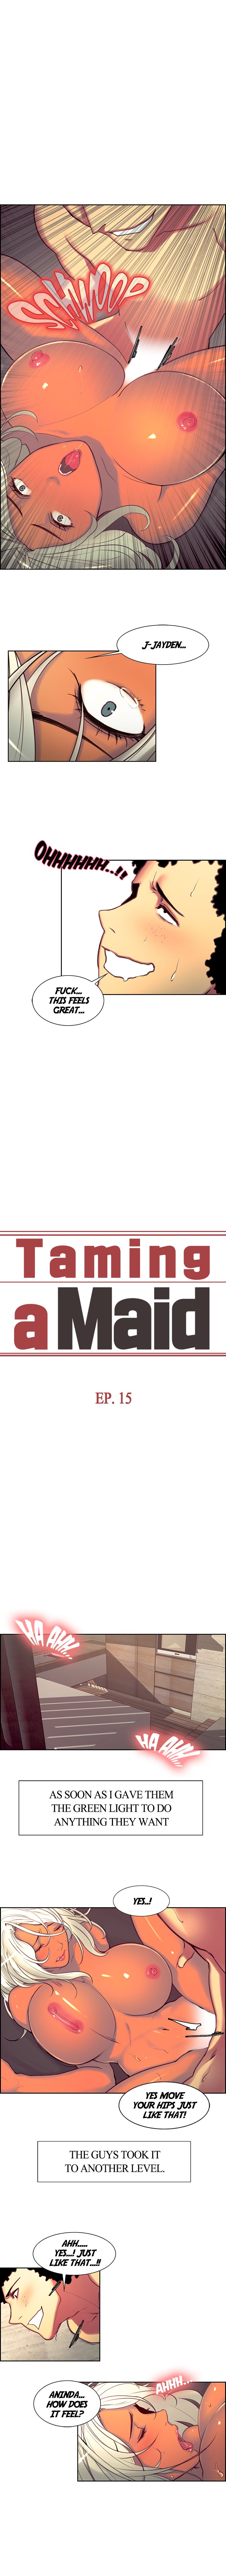 Taming a Maid image